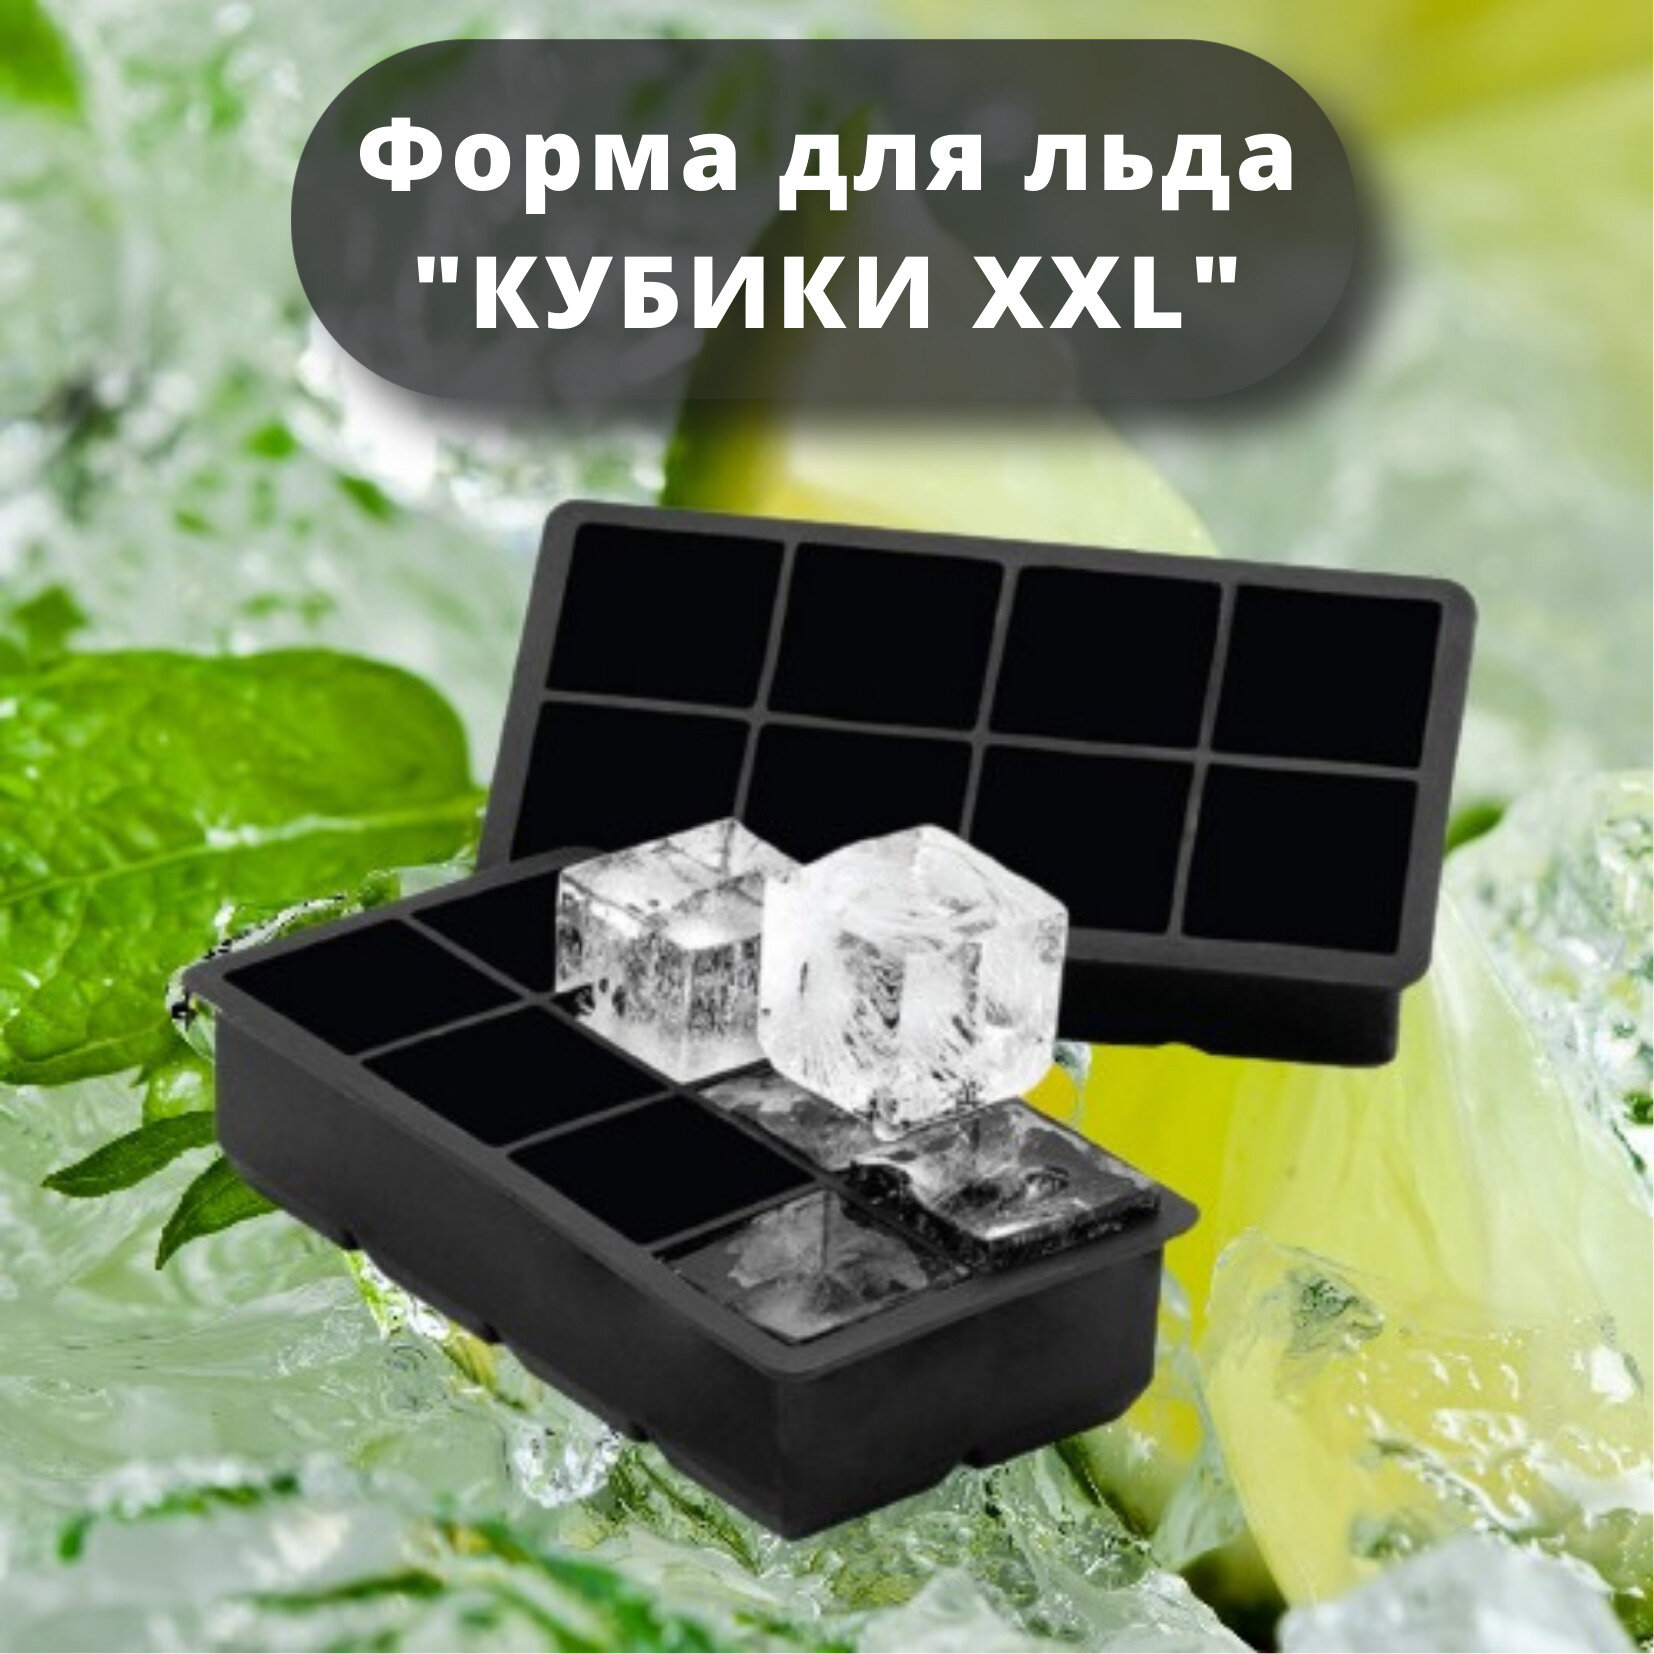 Силиконовая форма для льда "Кубики XXL" MG, кубики большие 8 ячеек, форма для конфет, форма для шоколада, 1 штука